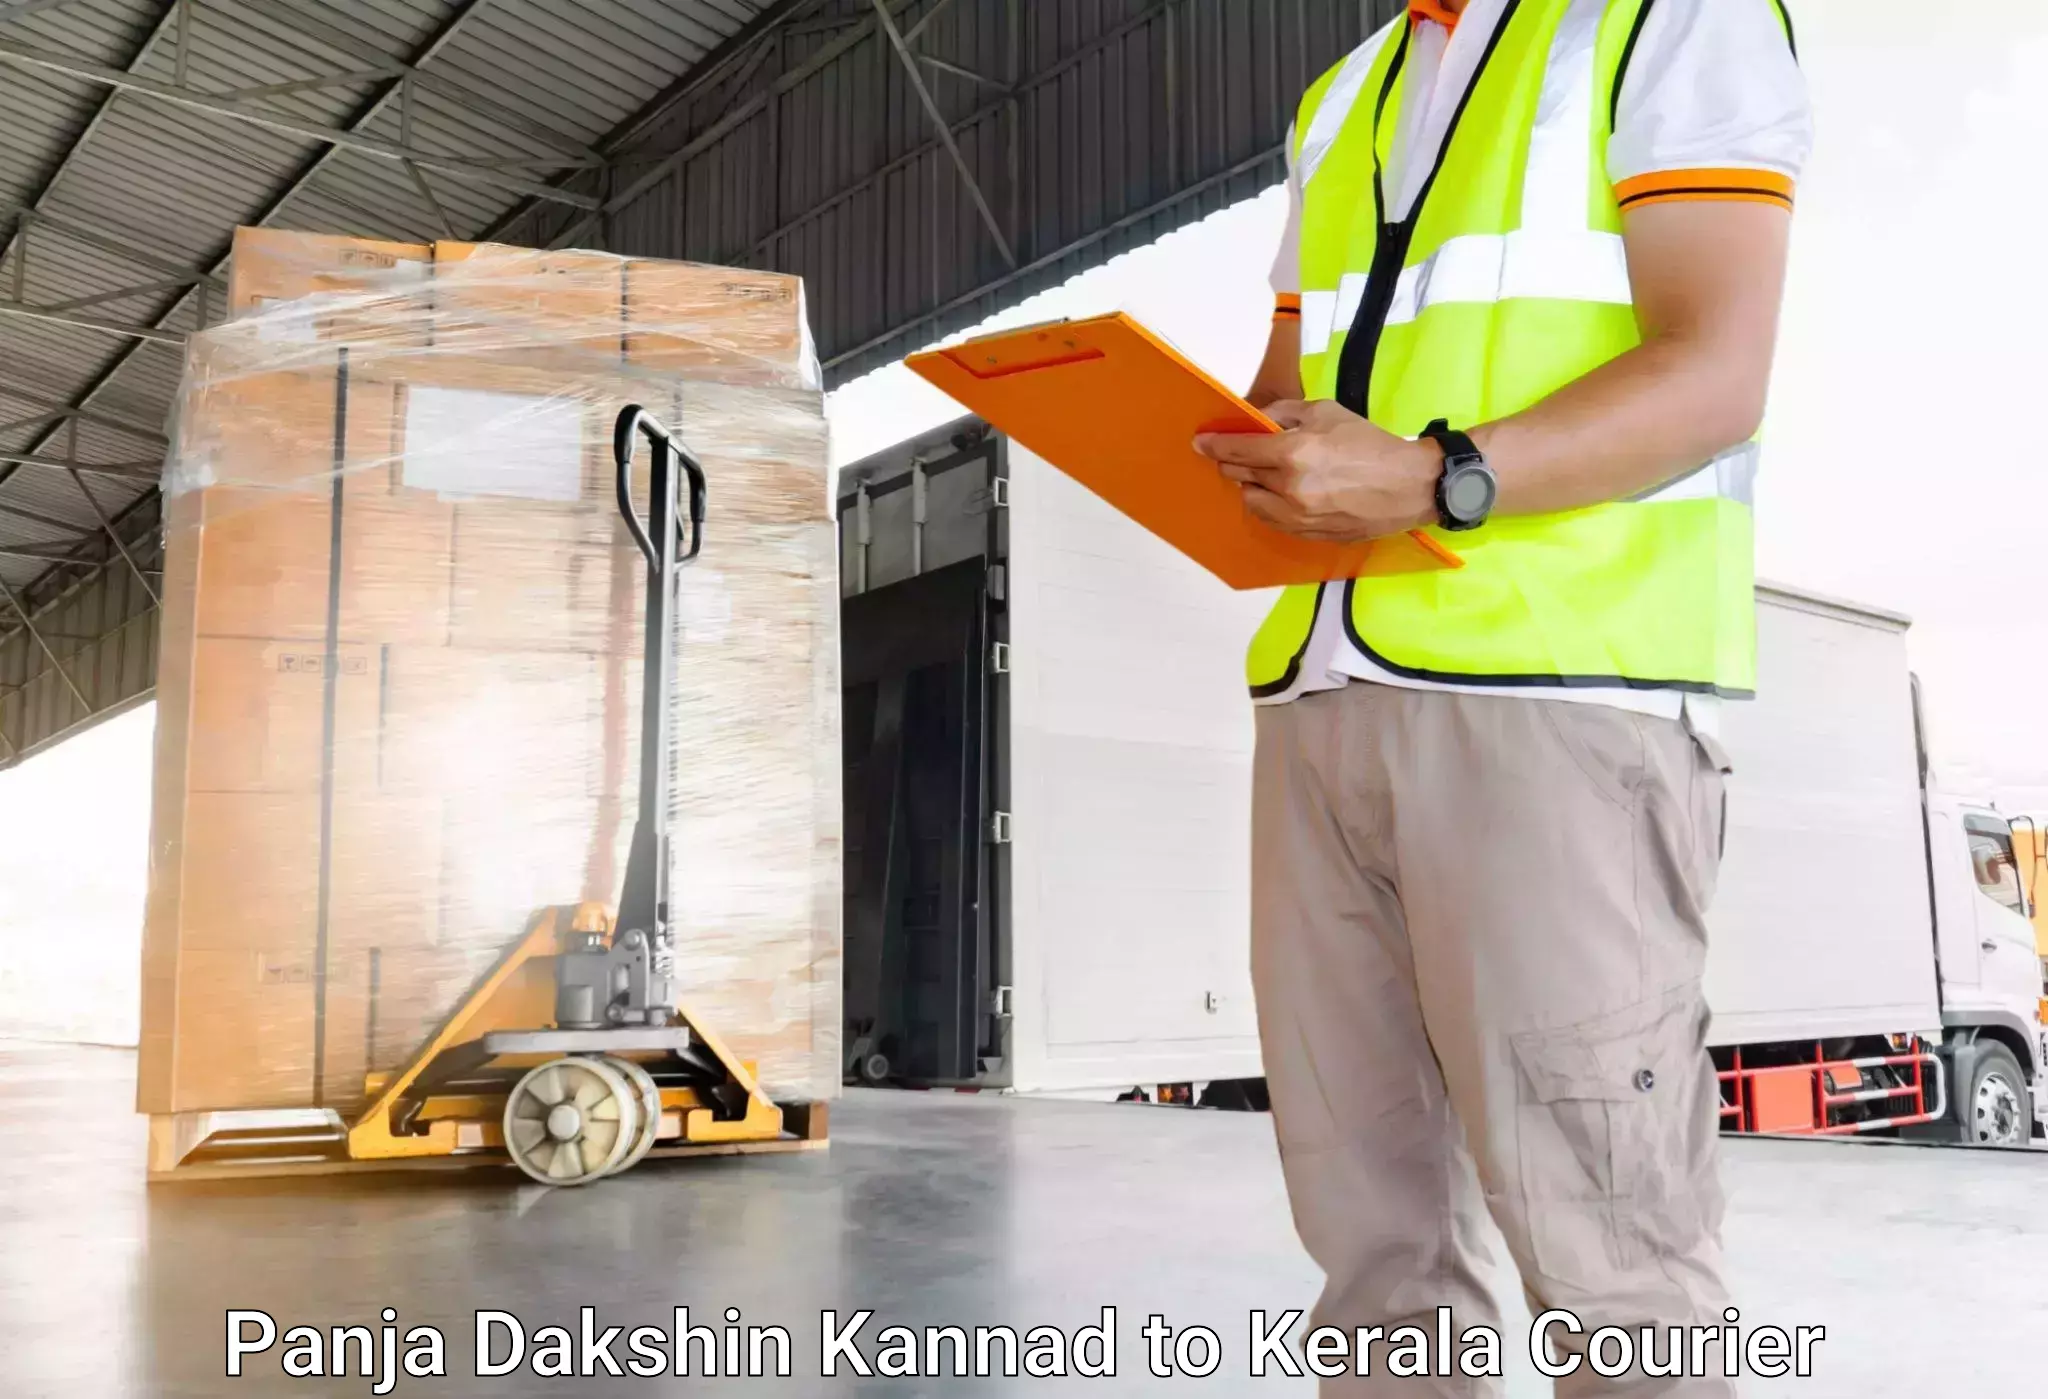 Efficient baggage courier system Panja Dakshin Kannad to Kerala